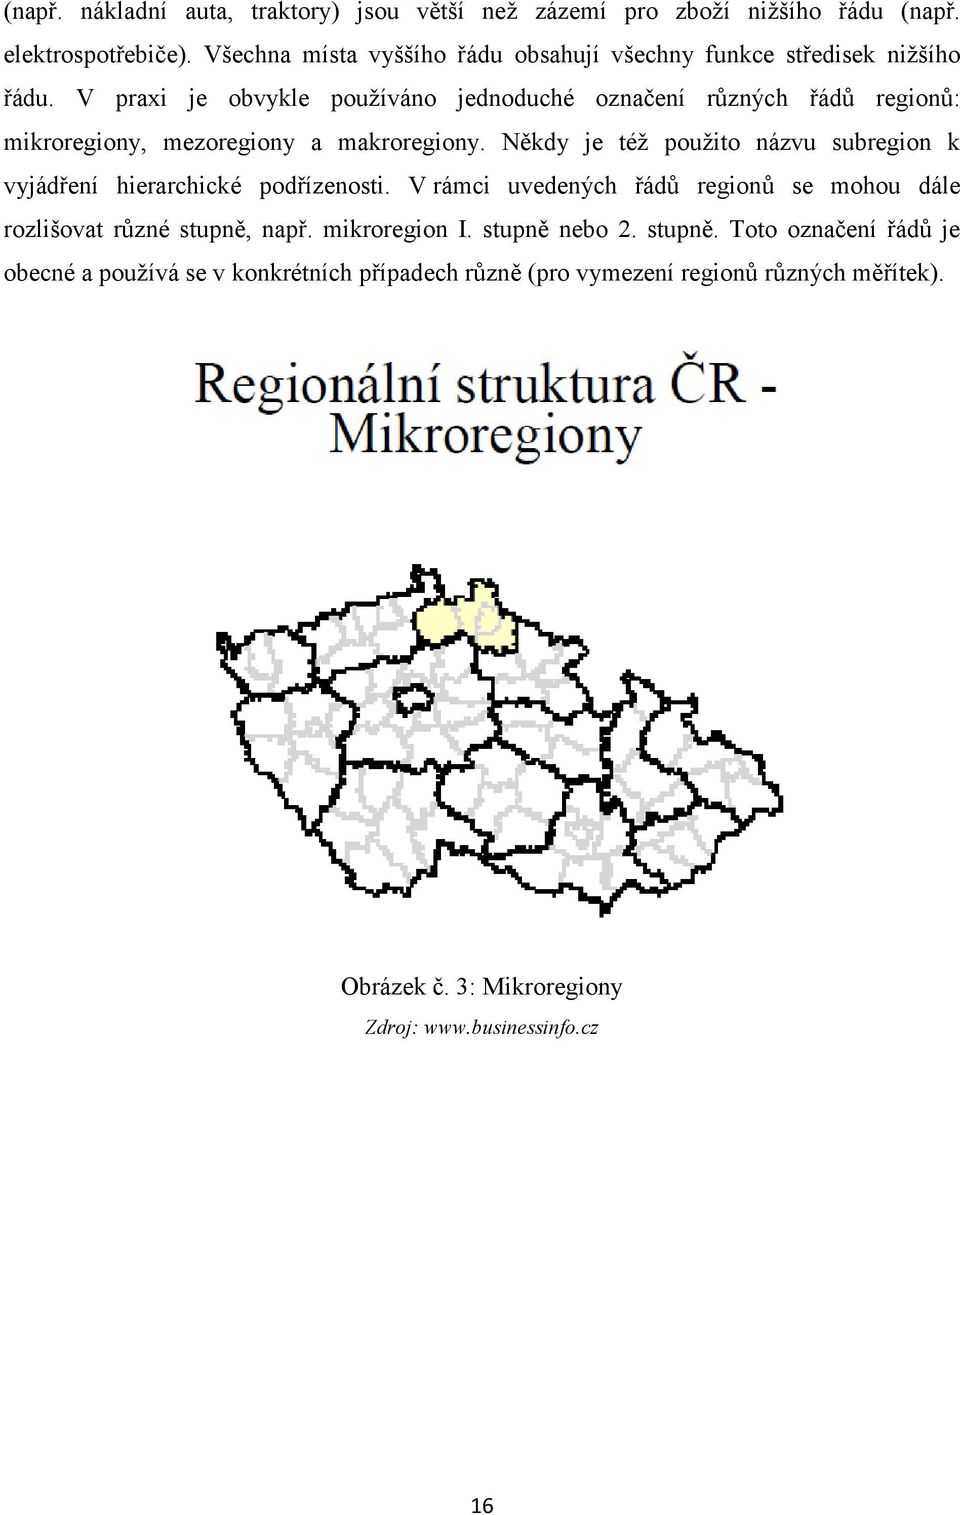 V praxi je obvykle používáno jednoduché označení různých řádů regionů: mikroregiony, mezoregiony a makroregiony.